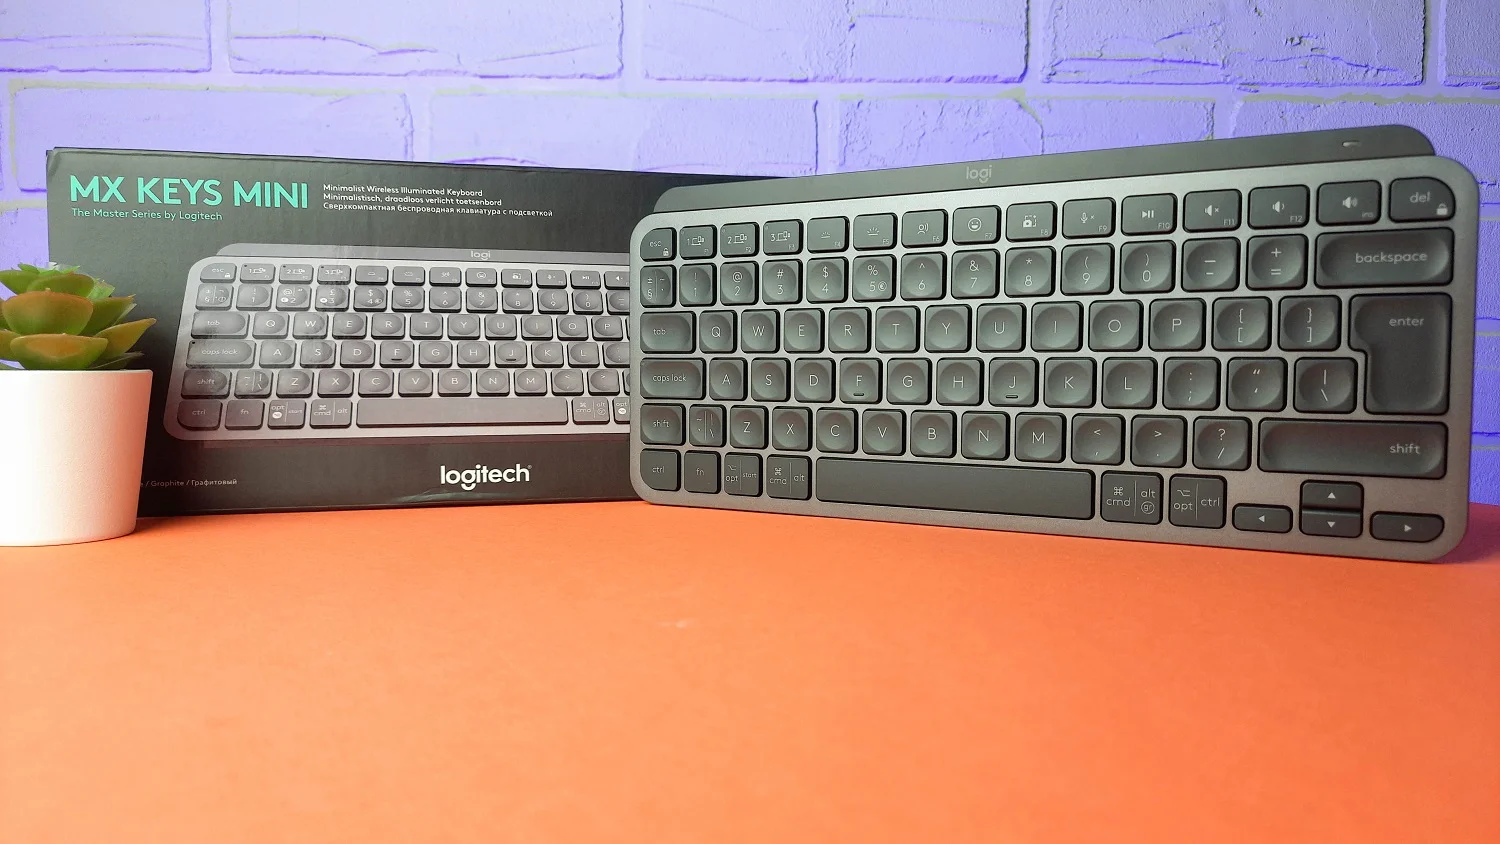 В конце сентября компания Logitech представила в России компактную клавиатуру MX Keys Mini. По дизайну модель копия ходовой полноформатной MX Keys, но ей добавили новые функциональные клавиши. После двух недель тестов, разбираемся кому подойдёт эта беспроводная клавиатура, в чём её фишки, где она хуже и лучше конкурентов.